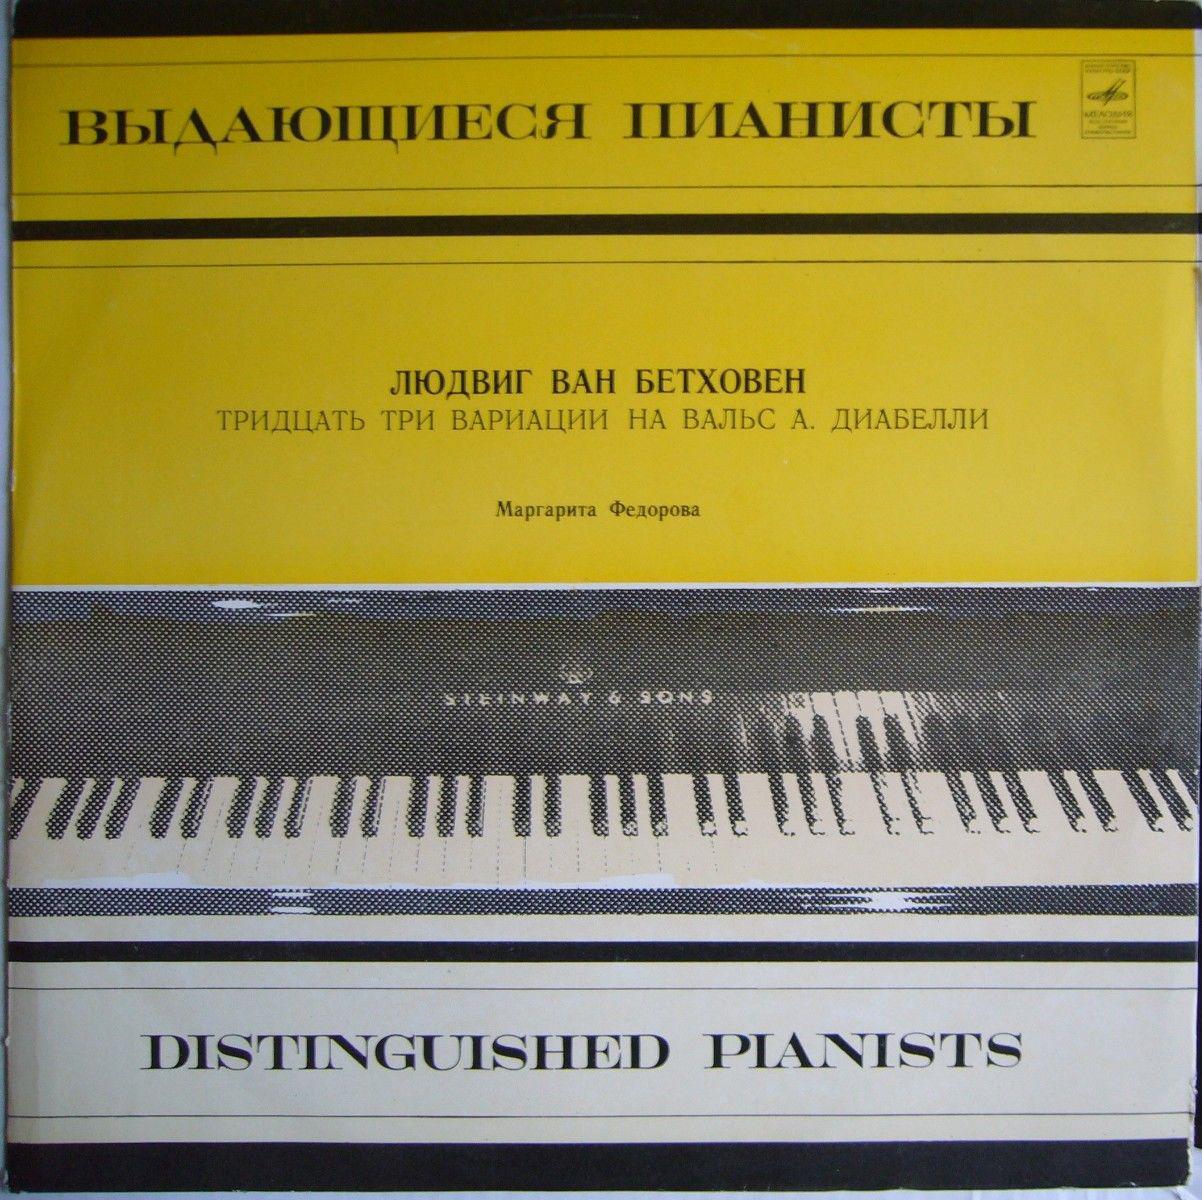 Л. Бетховен: 33 вариации на вальс А. Диабелли (Маргарита Федорова, ф-но)